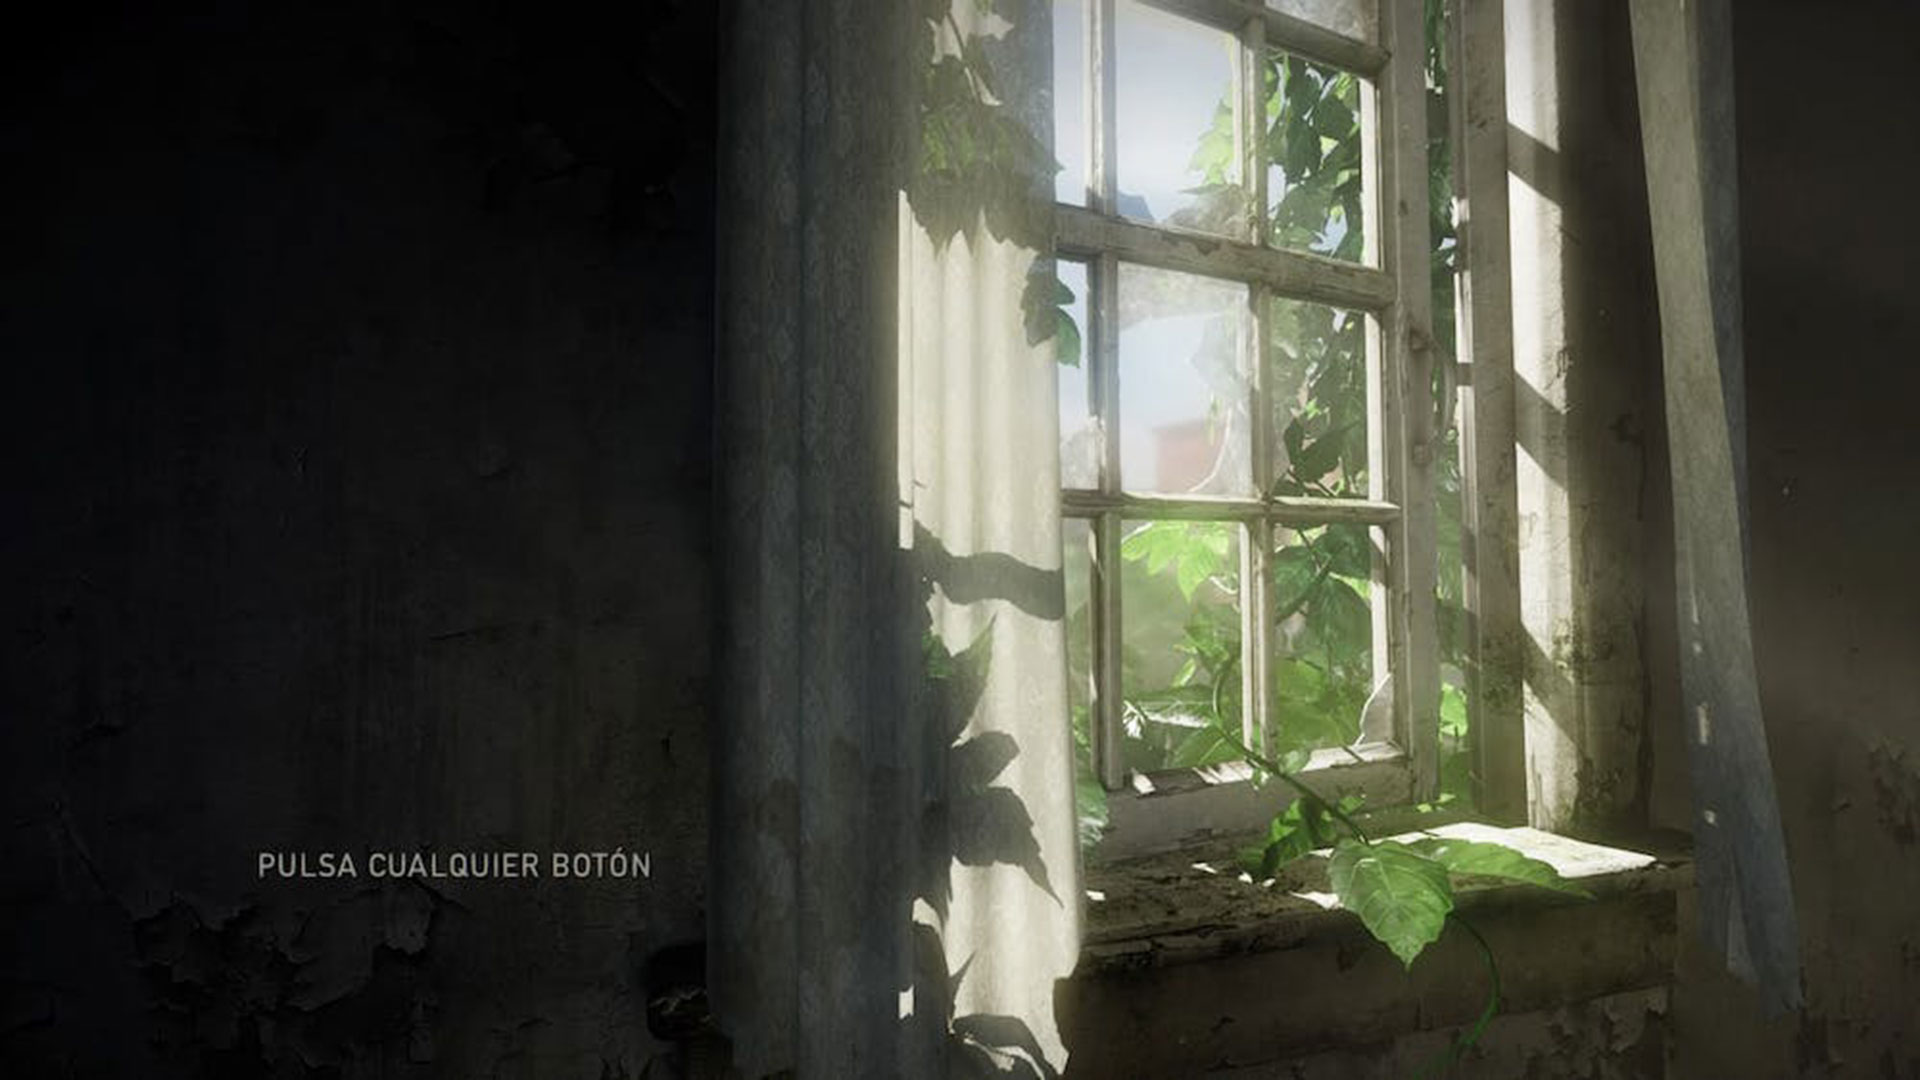 El menú de inicio del juego presenta el mensaje principal. Nos encontramos en una habitación a oscuras y por la ventana entra un potente rayo de sol que invita a salir. The Last of Us / Naughty Dog